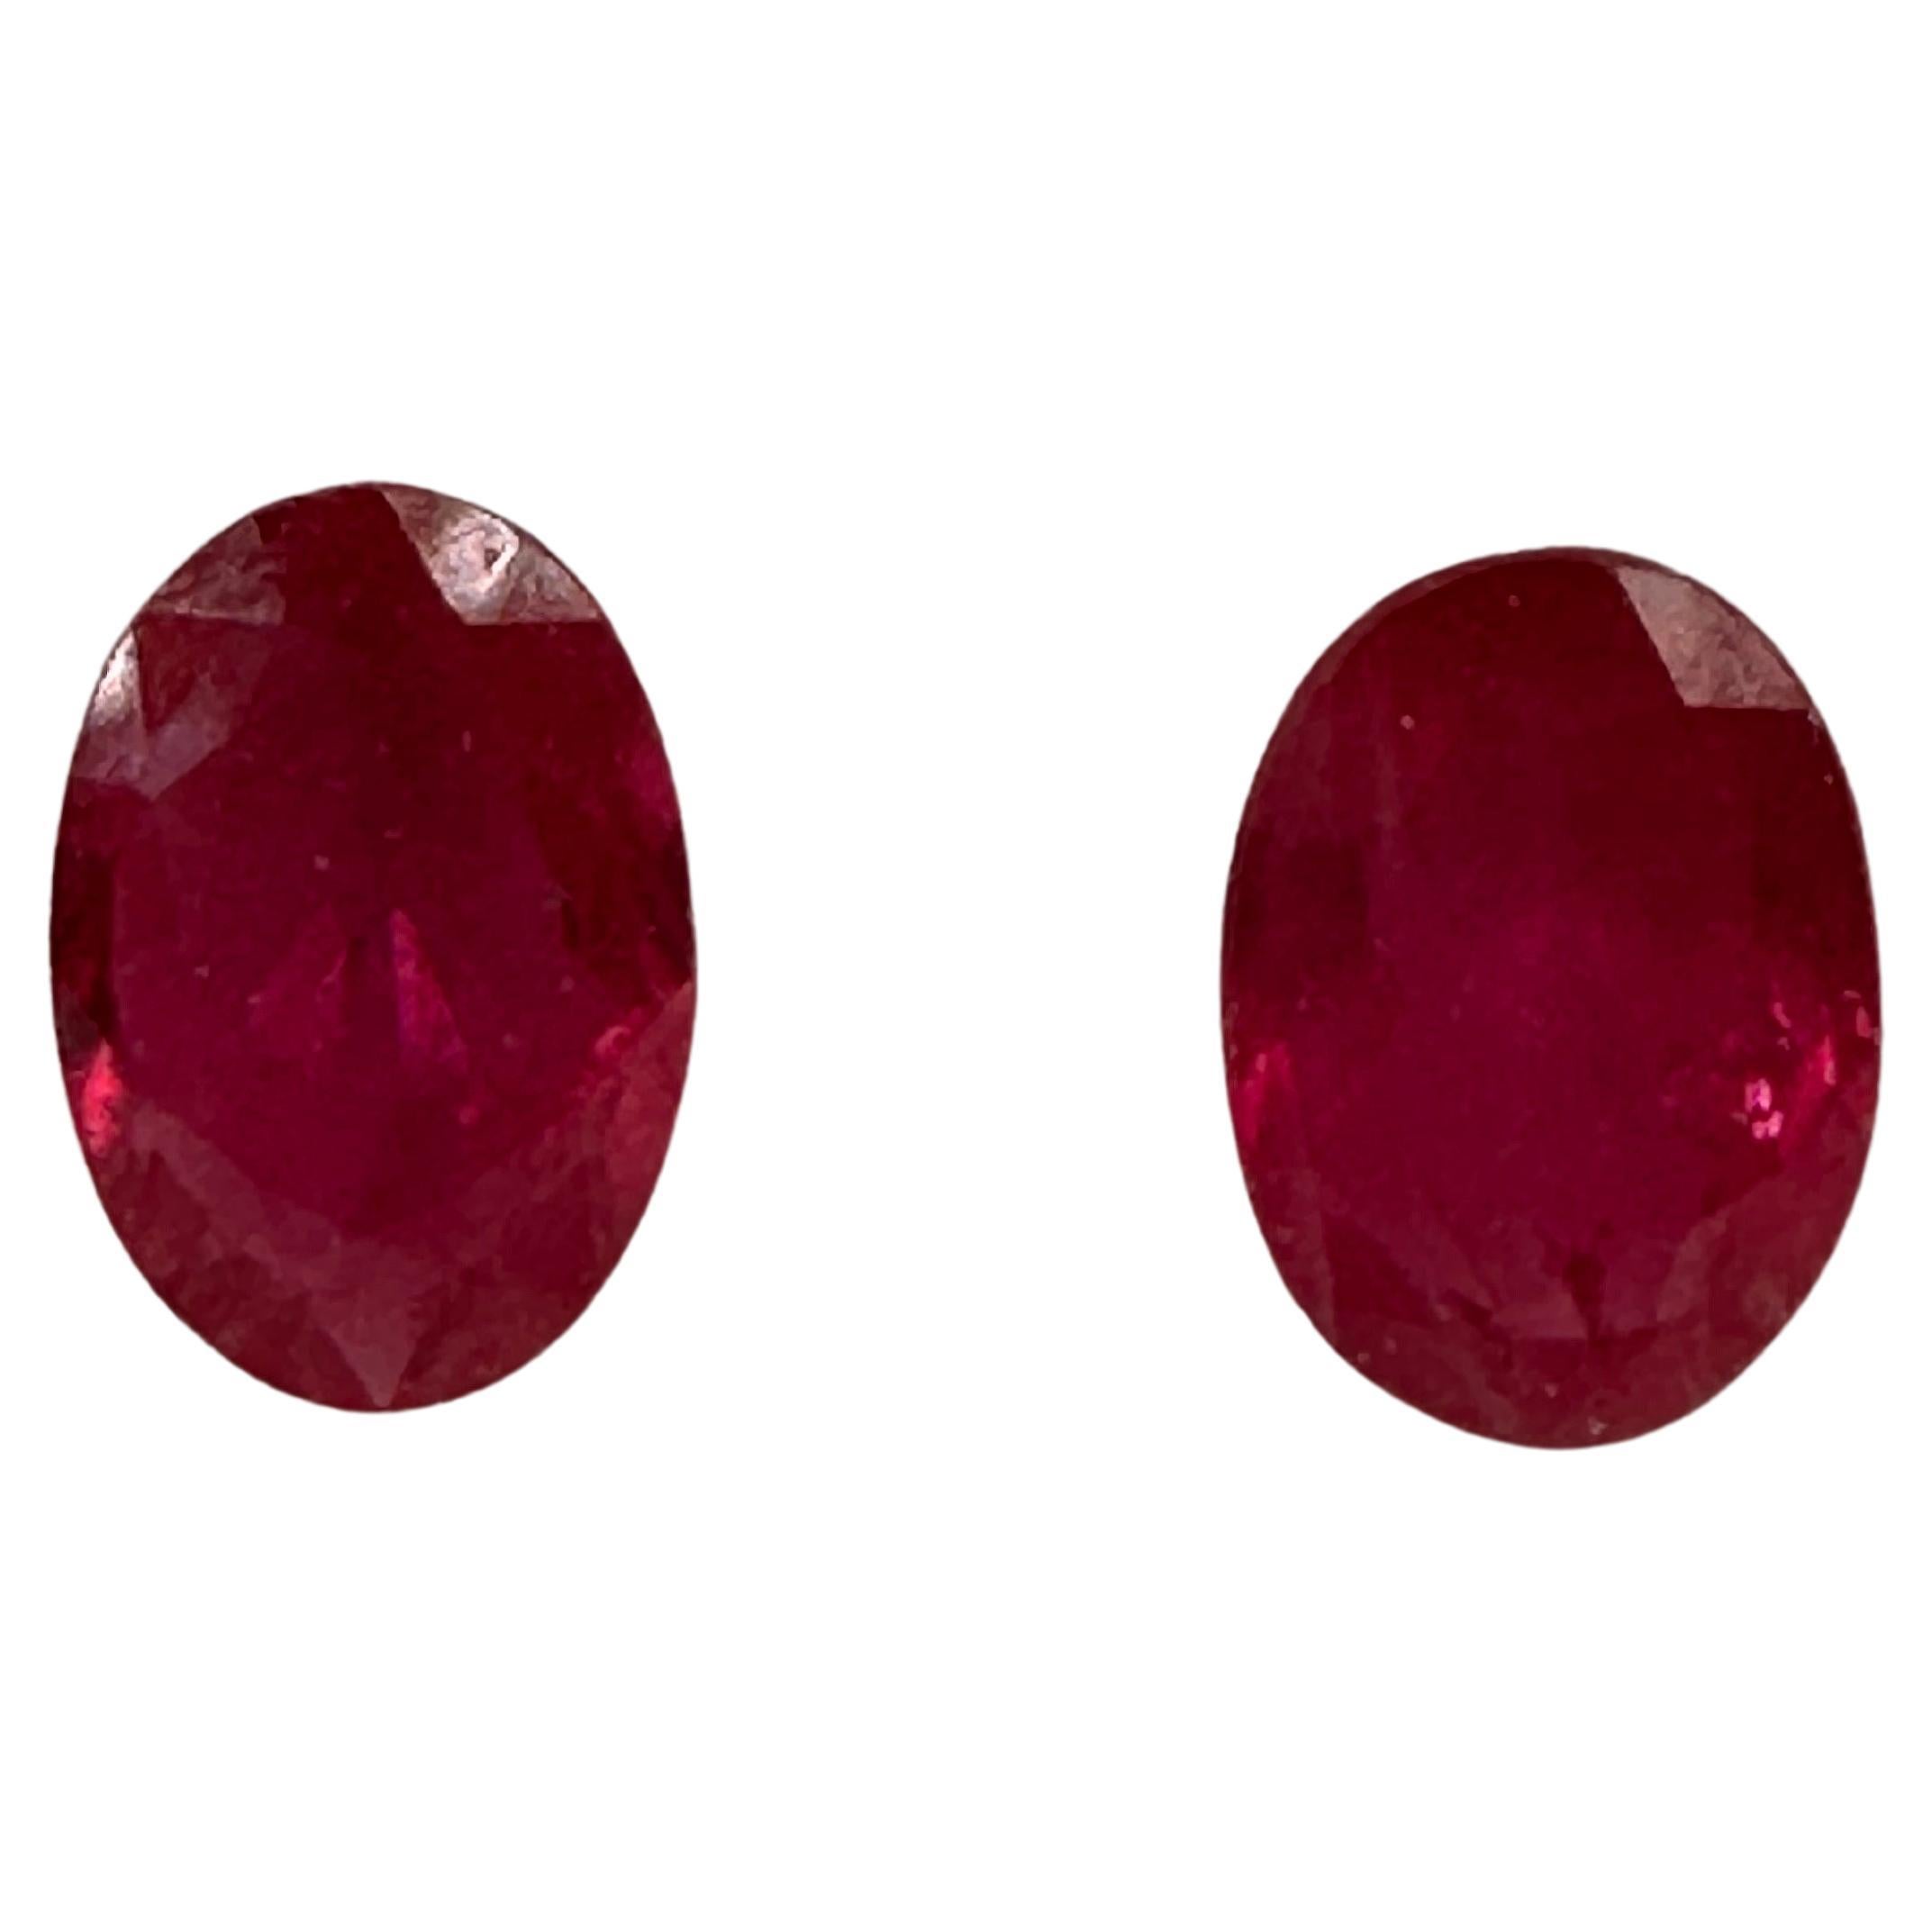 Passendes Rubin-Paar unbehandeltes 6,5x4,5 mm Rubin oval natürlich rosa Rot